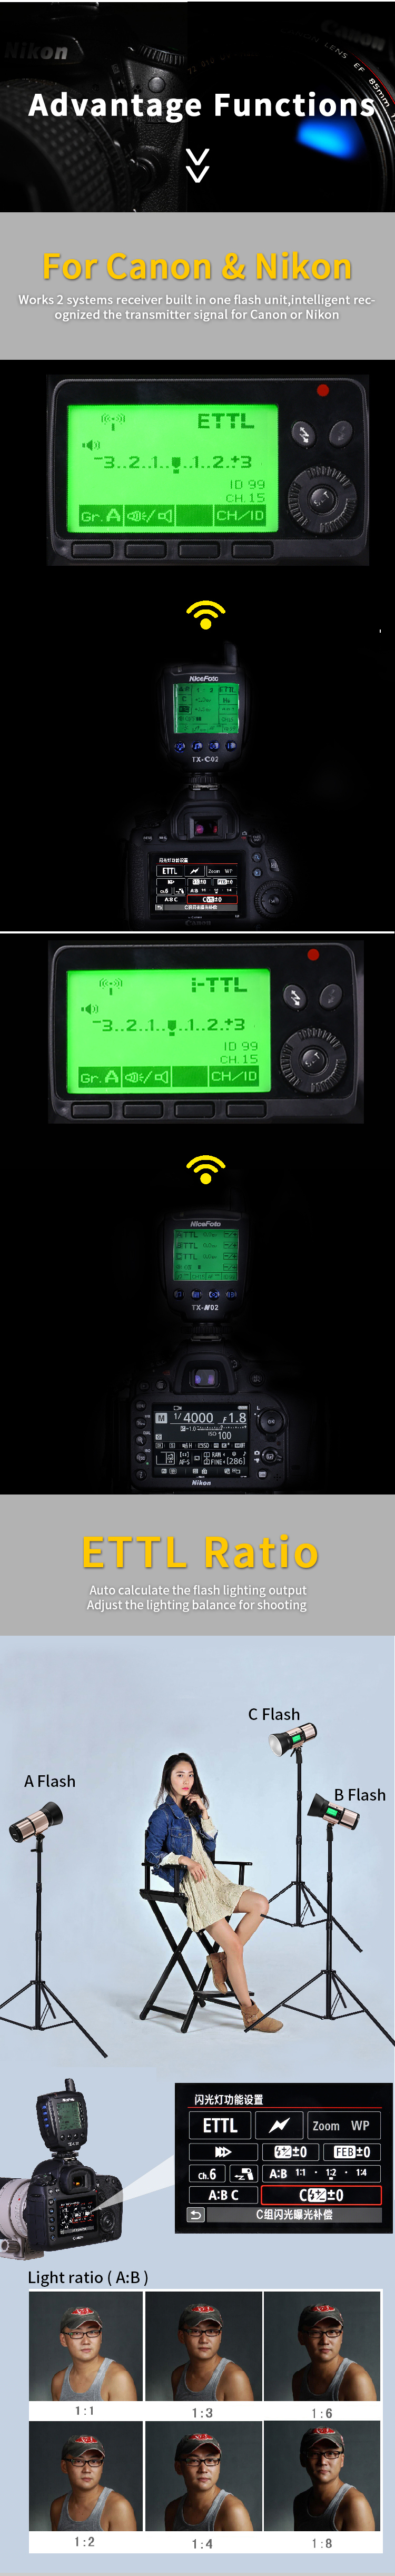 Аккумуляторный моноблок NiceFoto K8 TTL-M + синхронизатор TX-N02 (800 Дж, TTL, для Nikon)